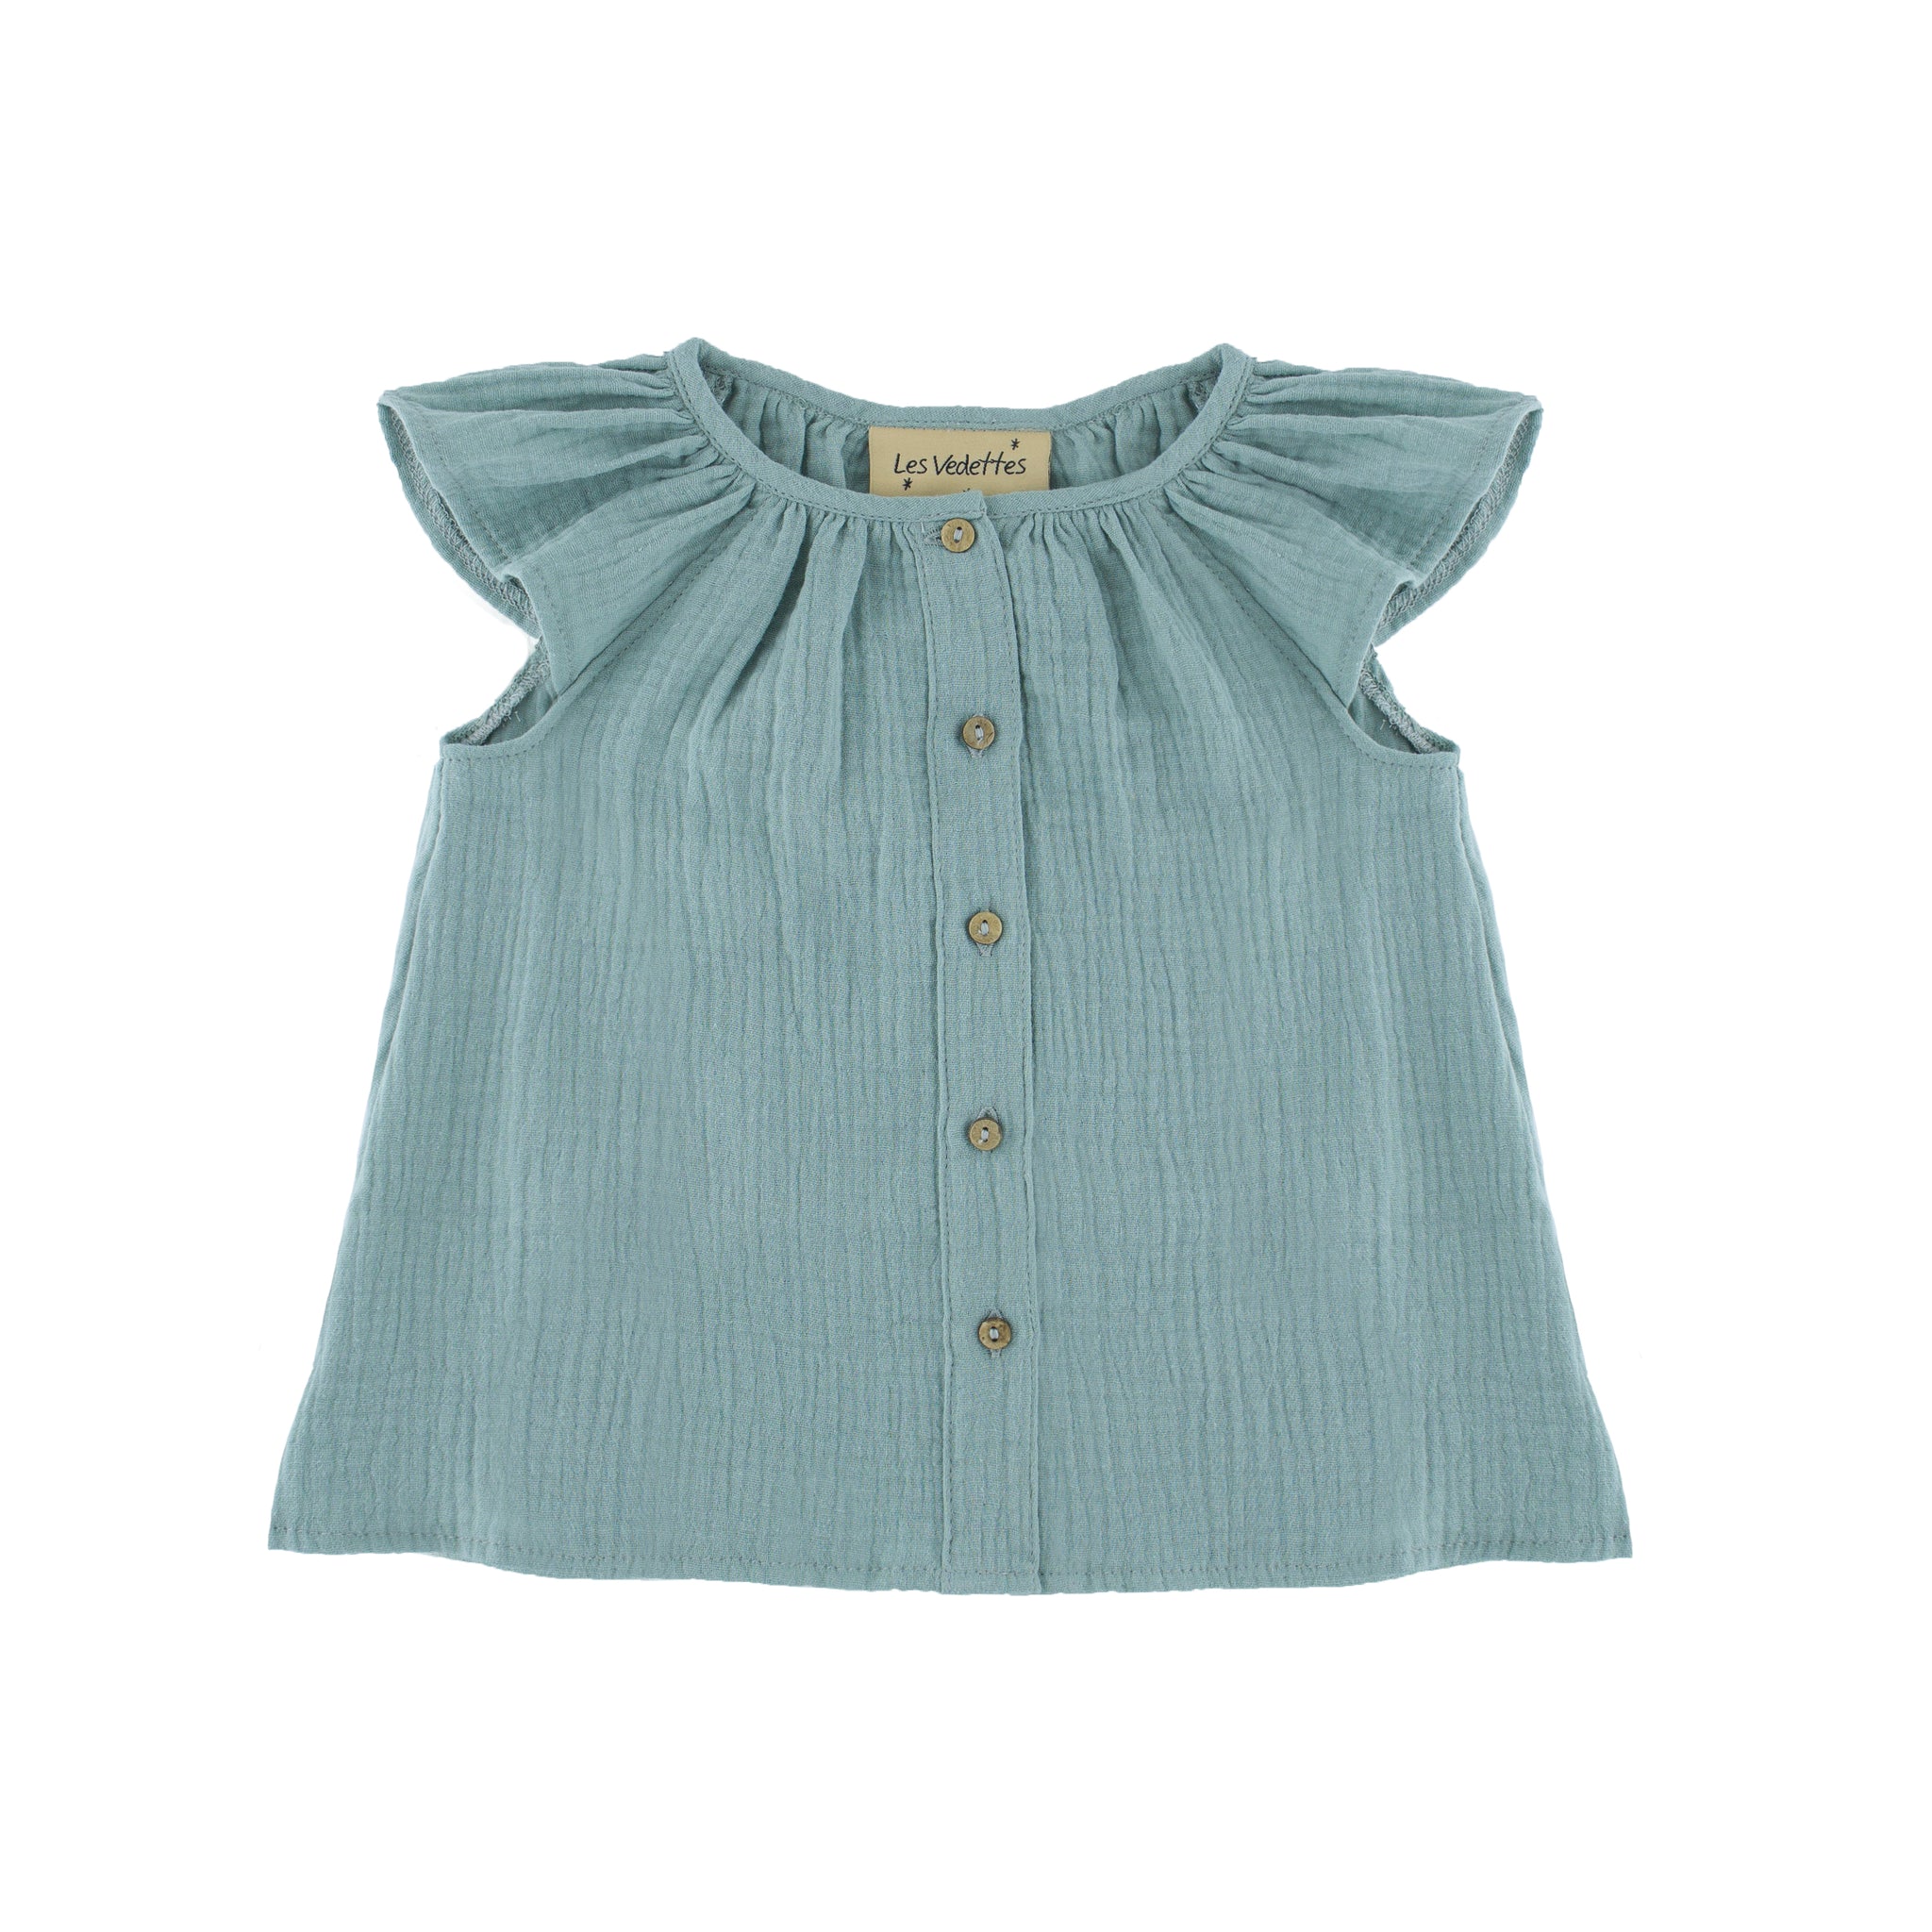 Girls Short Sleeve Lilou Top - Soft Green- 6months-8years - Muslin Cotton